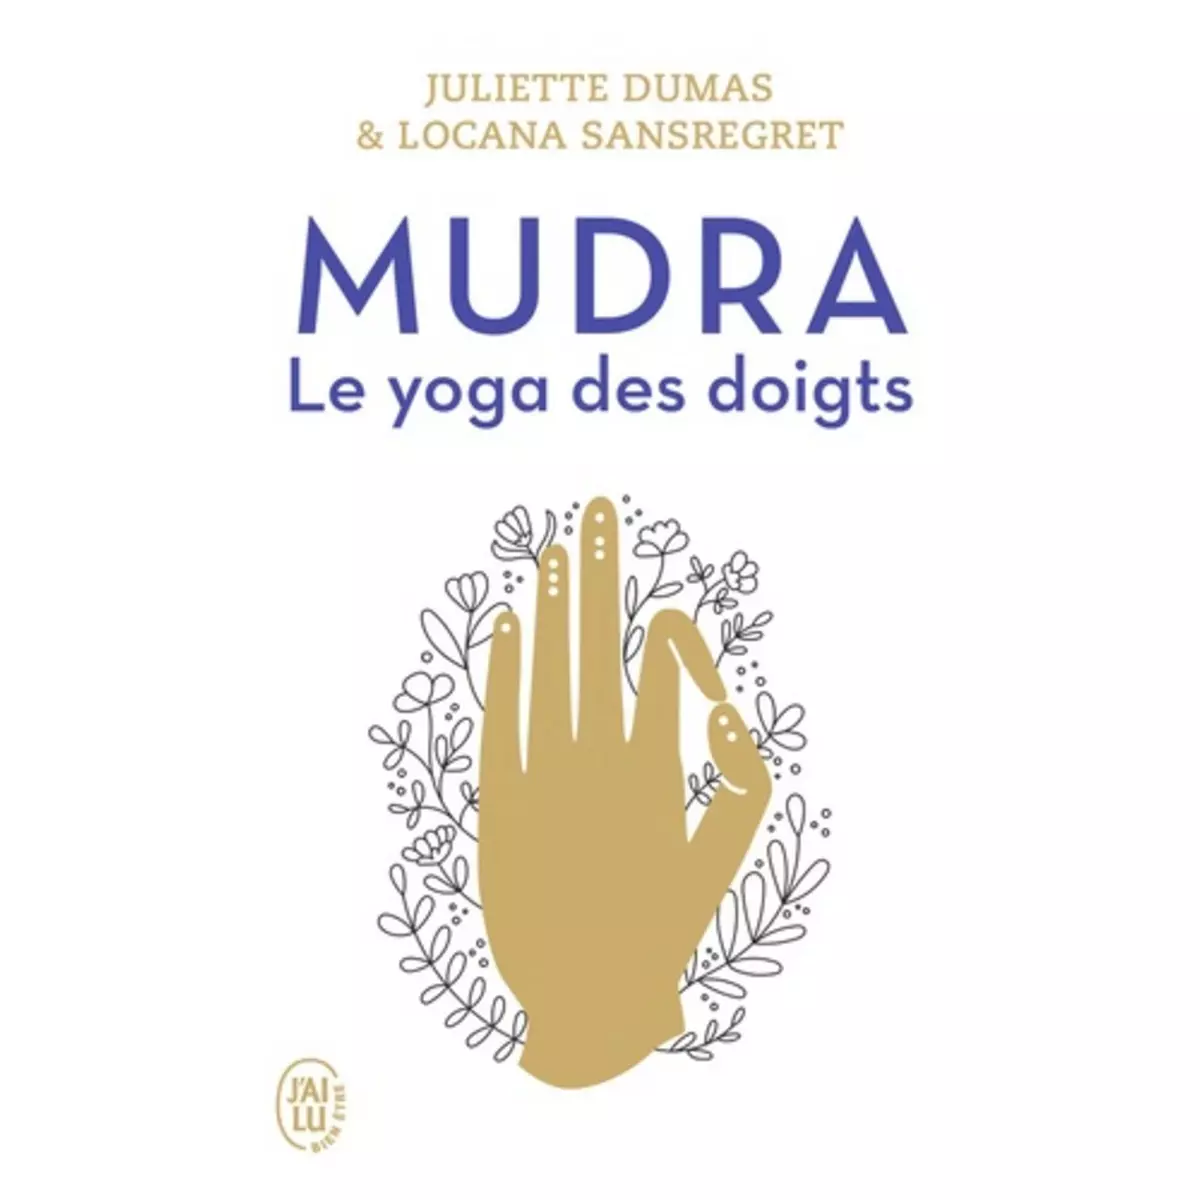  MUDRA. LE YOGA DES DOIGTS, Dumas Juliette